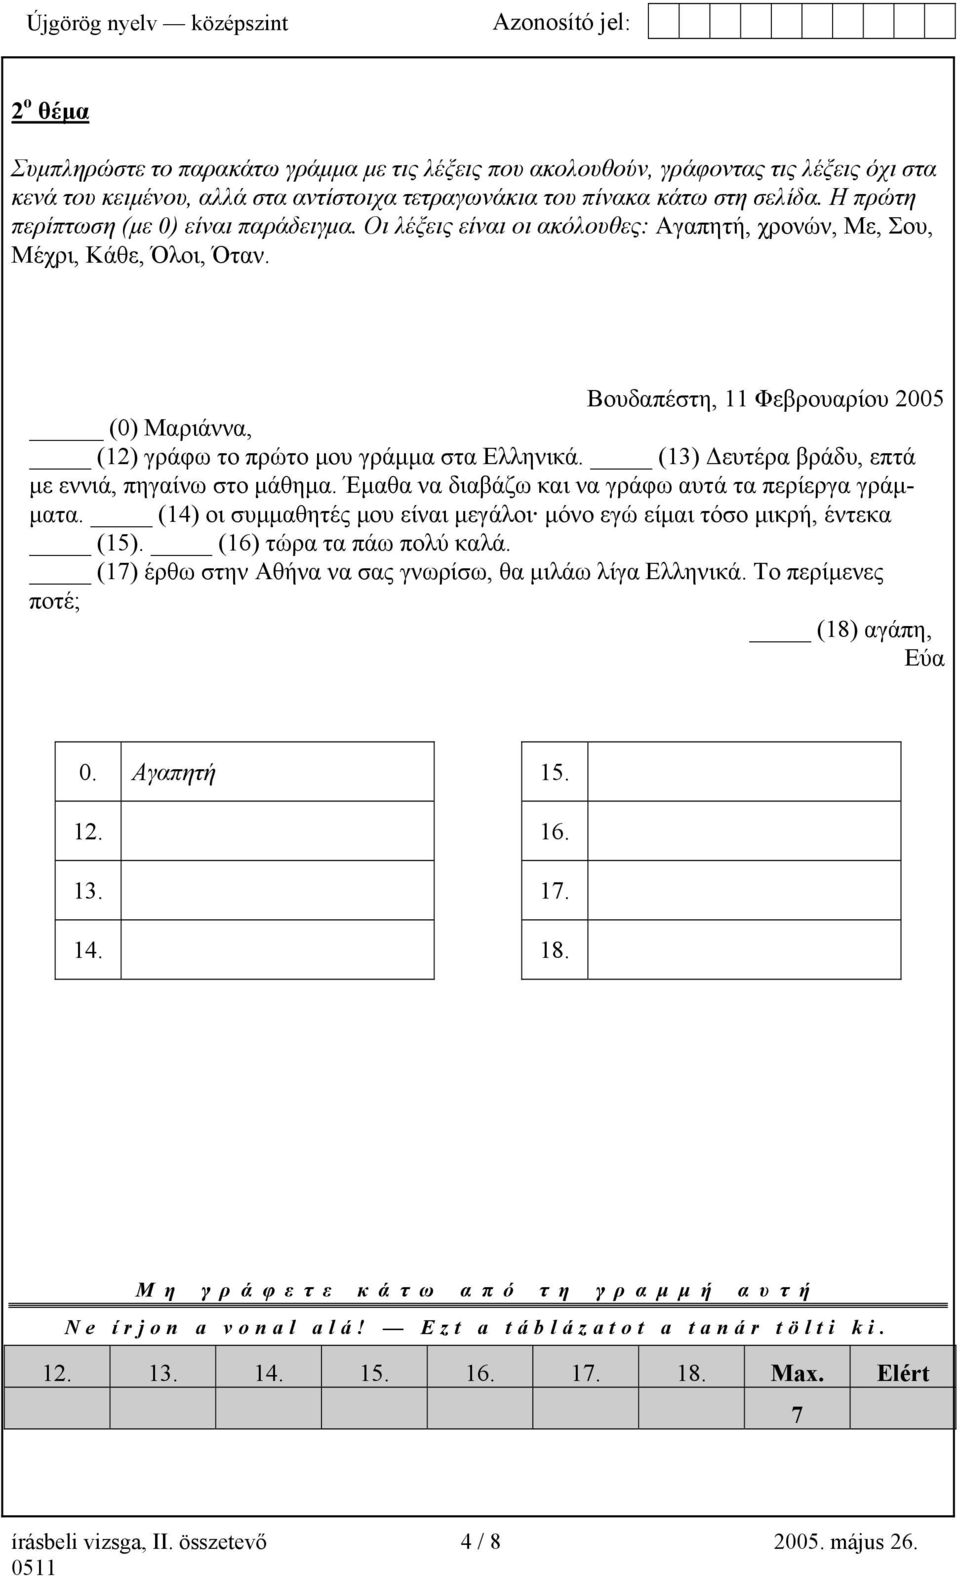 Βουδαπέστη, 11 Φεβρουαρίου 2005 (0) Μαριάννα, (12) γράφω το πρώτο µου γράµµα στα Ελληνικά. (13) ευτέρα βράδυ, επτά µε εννιά, πηγαίνω στο µάθηµα.